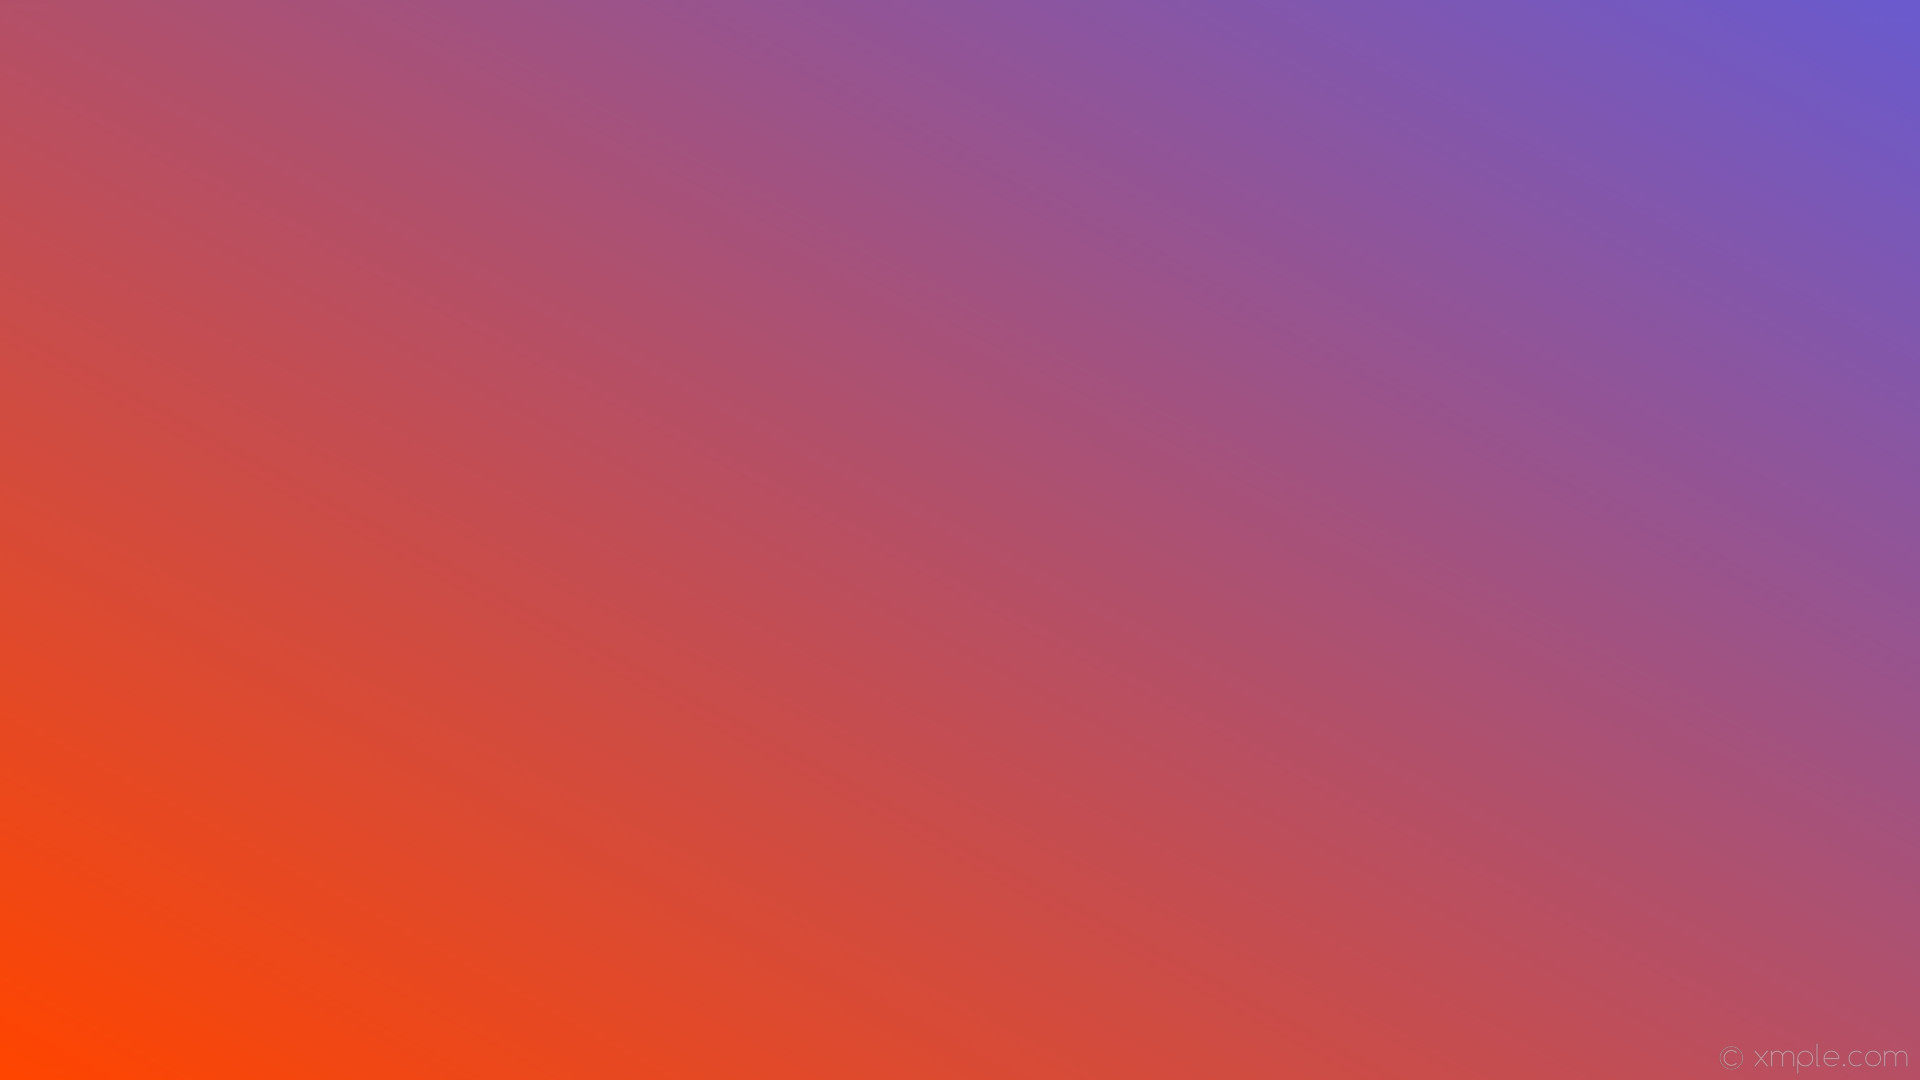 1920x1080 wallpaper gradient orange purple linear slate blue orangered #6a5acd  #ff4500 30Â°